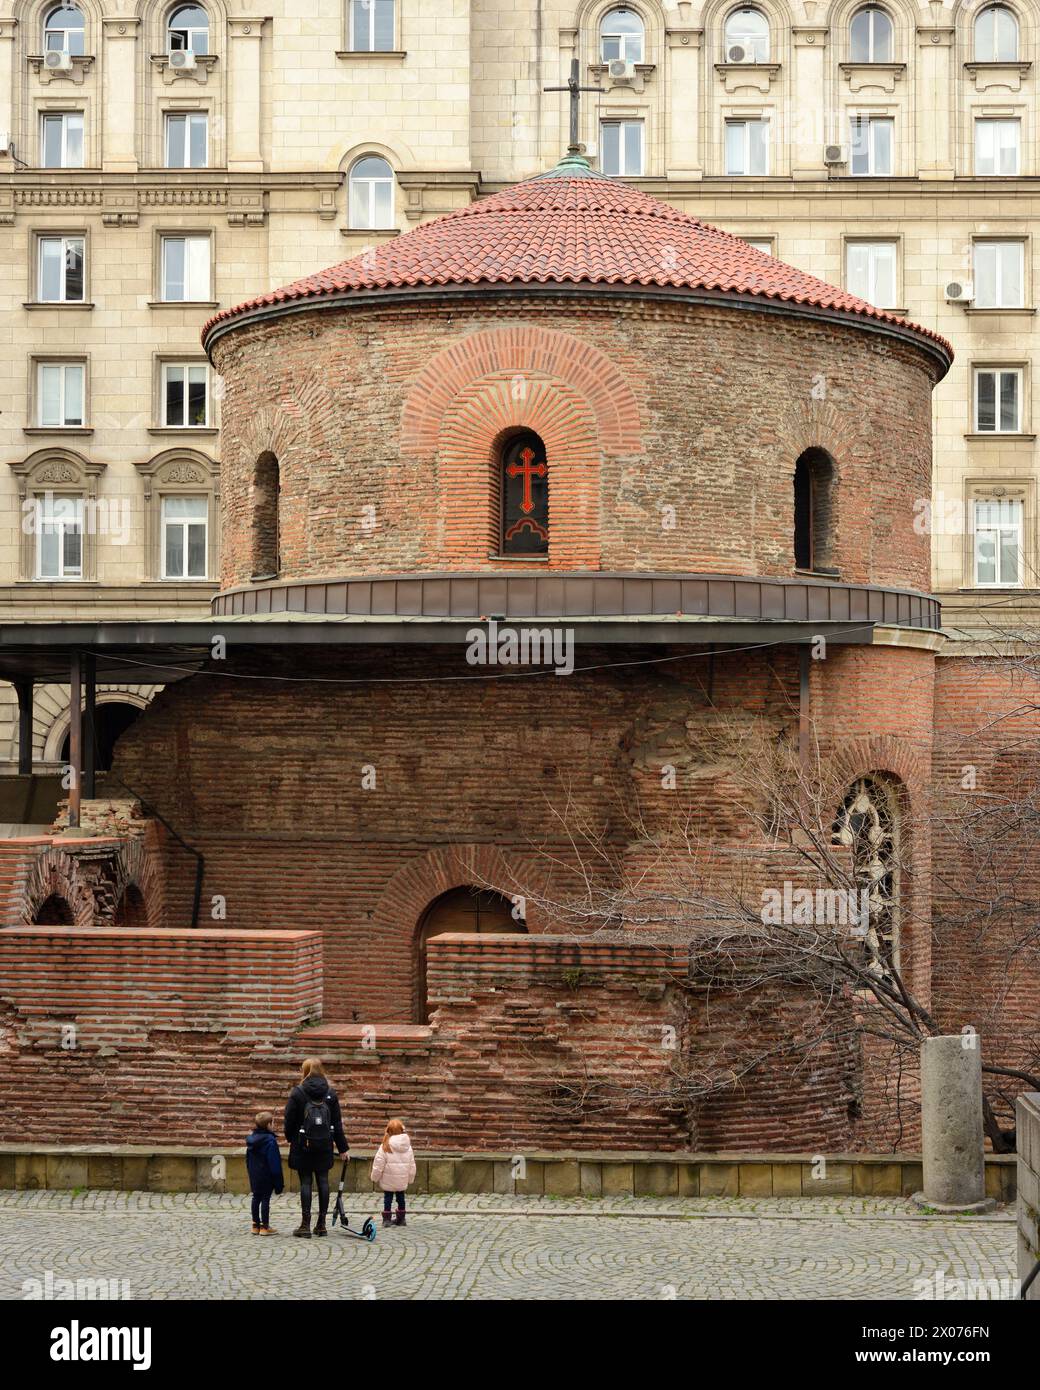 La Rotonda della Chiesa di San Giorgio del III secolo è il più antico edificio e punto di riferimento turistico di Sofia, Bulgaria, Europa dell'Est, Balcani, UE Foto Stock